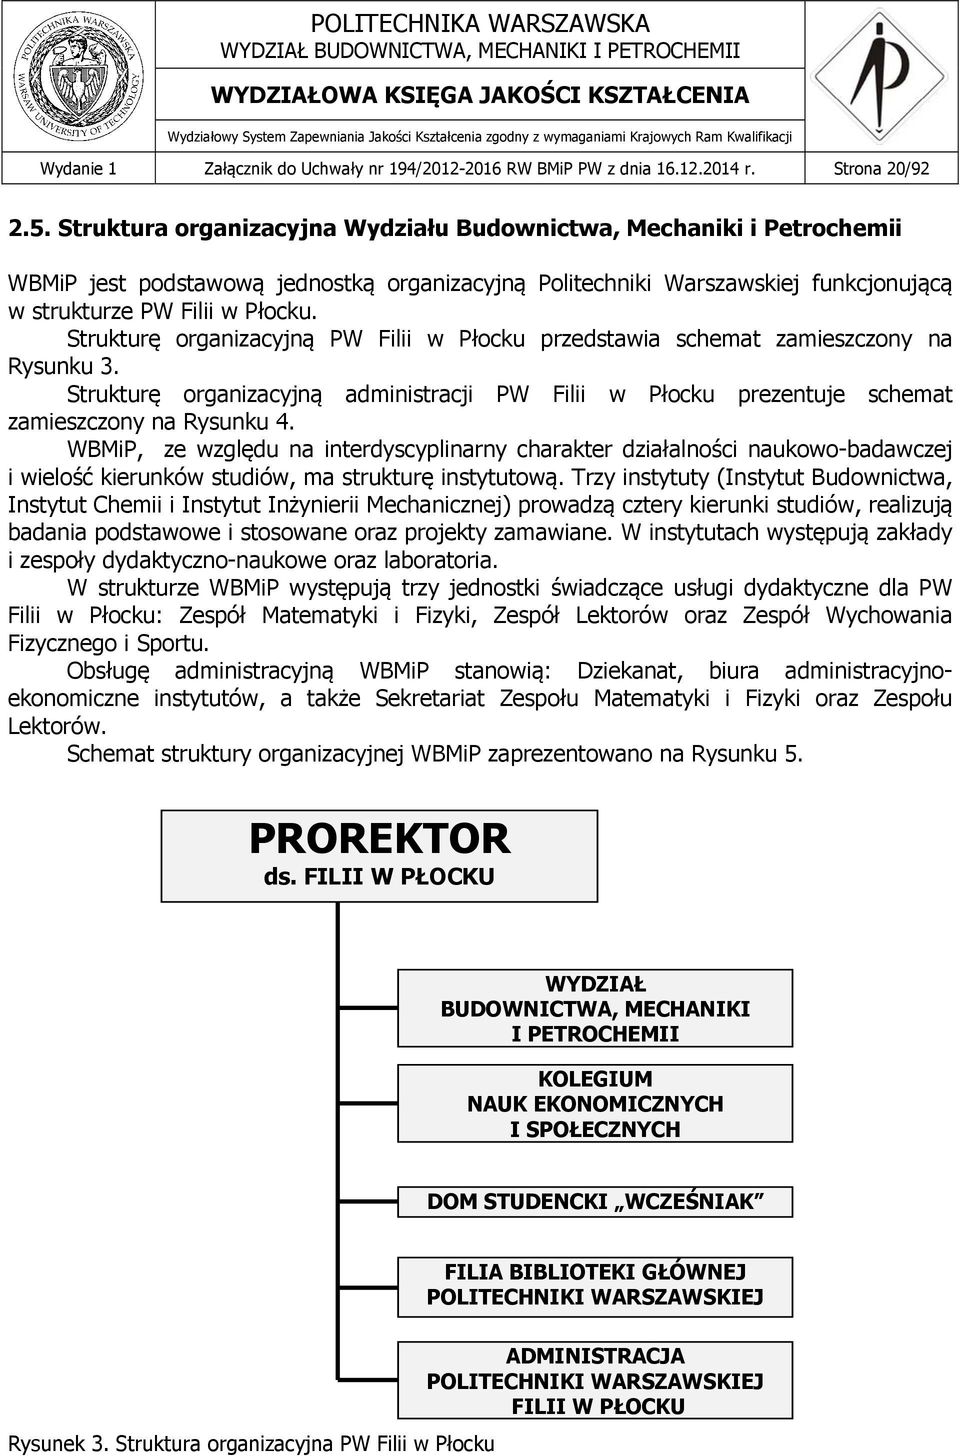 Strukturę organizacyjną PW Filii w Płocku przedstawia schemat zamieszczony na Rysunku 3. Strukturę organizacyjną administracji PW Filii w Płocku prezentuje schemat zamieszczony na Rysunku 4.